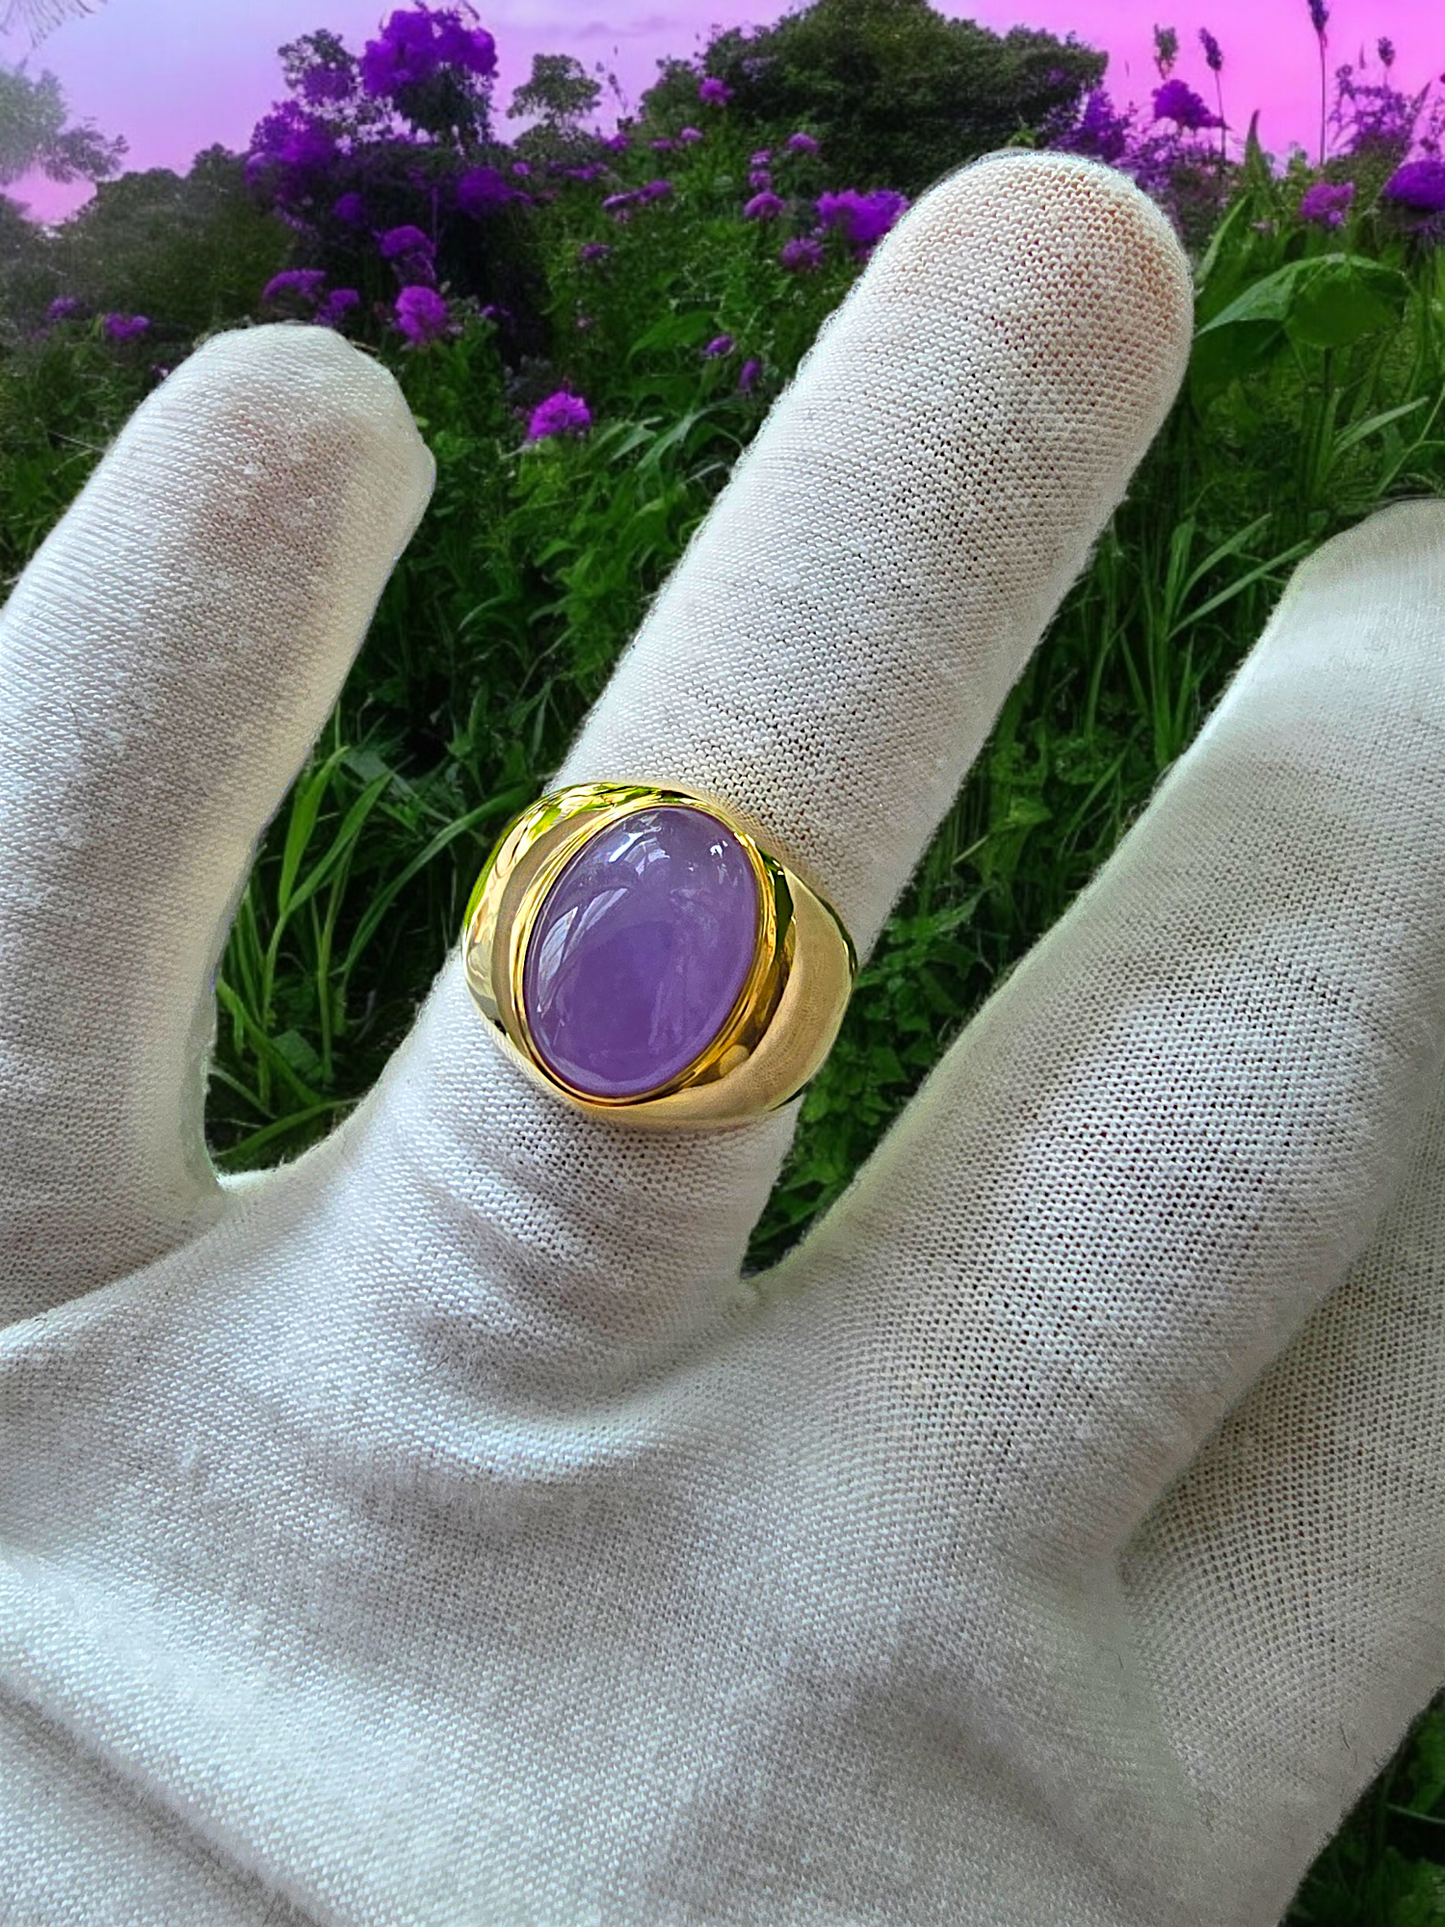 Anyang Royal Purple Jade Ring (with 14K Yellow Gold)